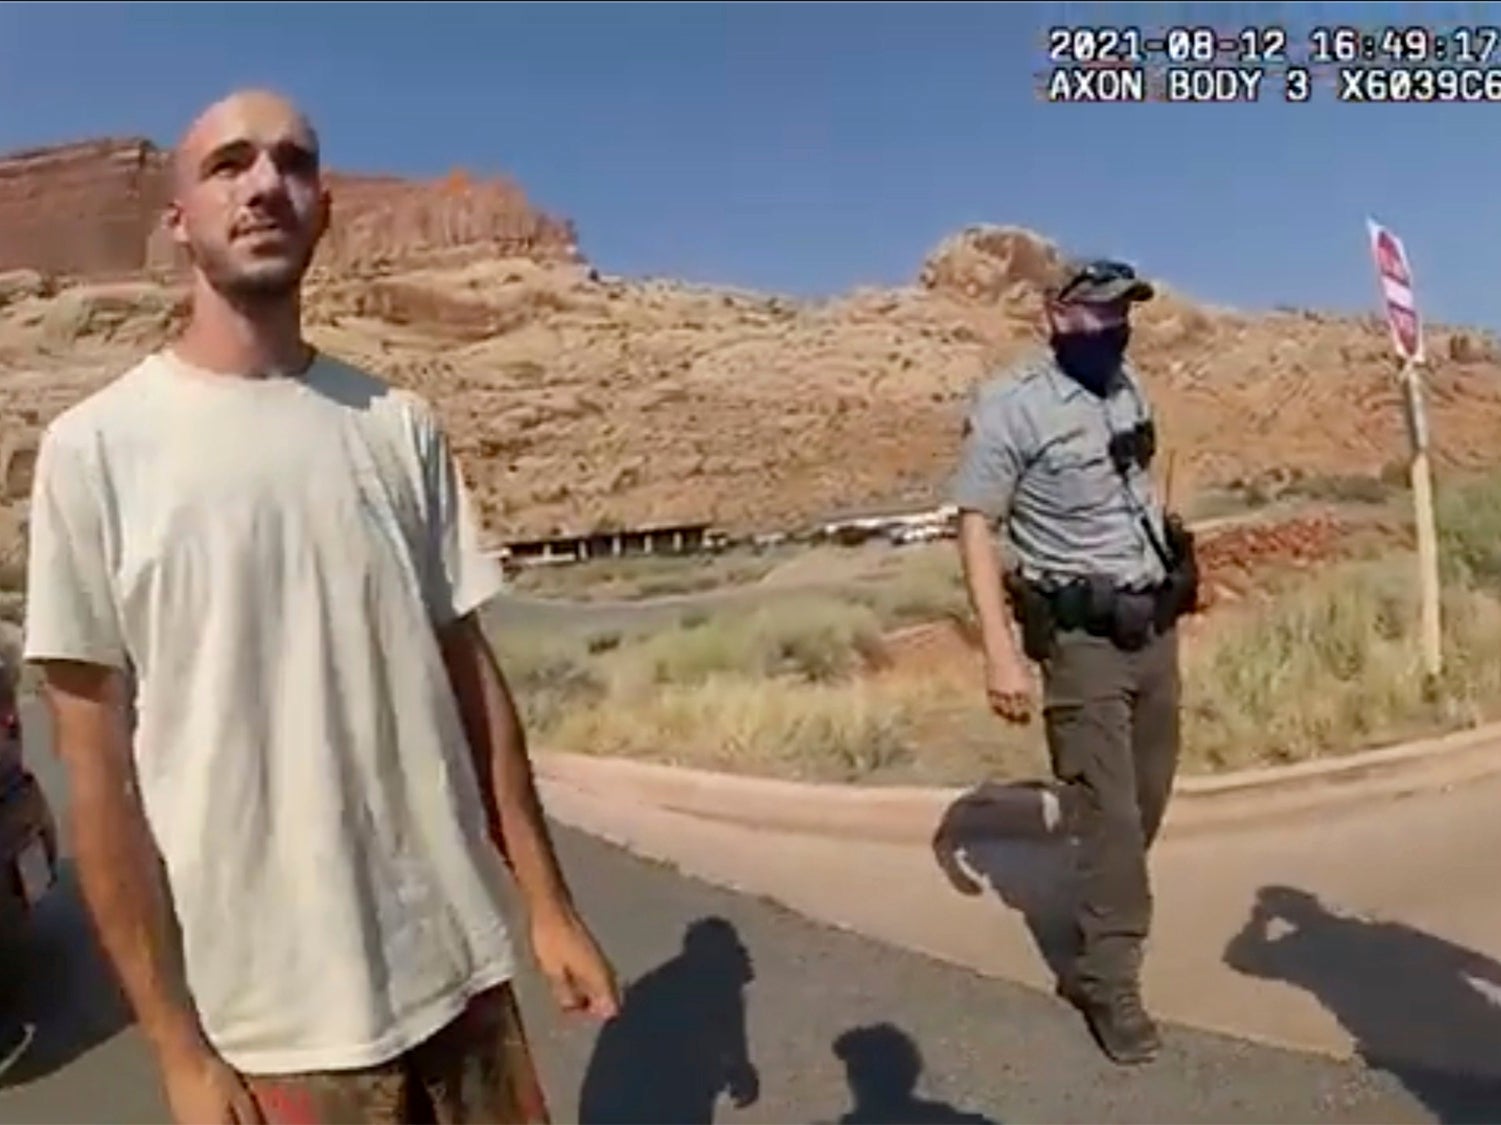 Brian Laundrie en las imágenes de las cámaras policiales durante el incidente en Moab